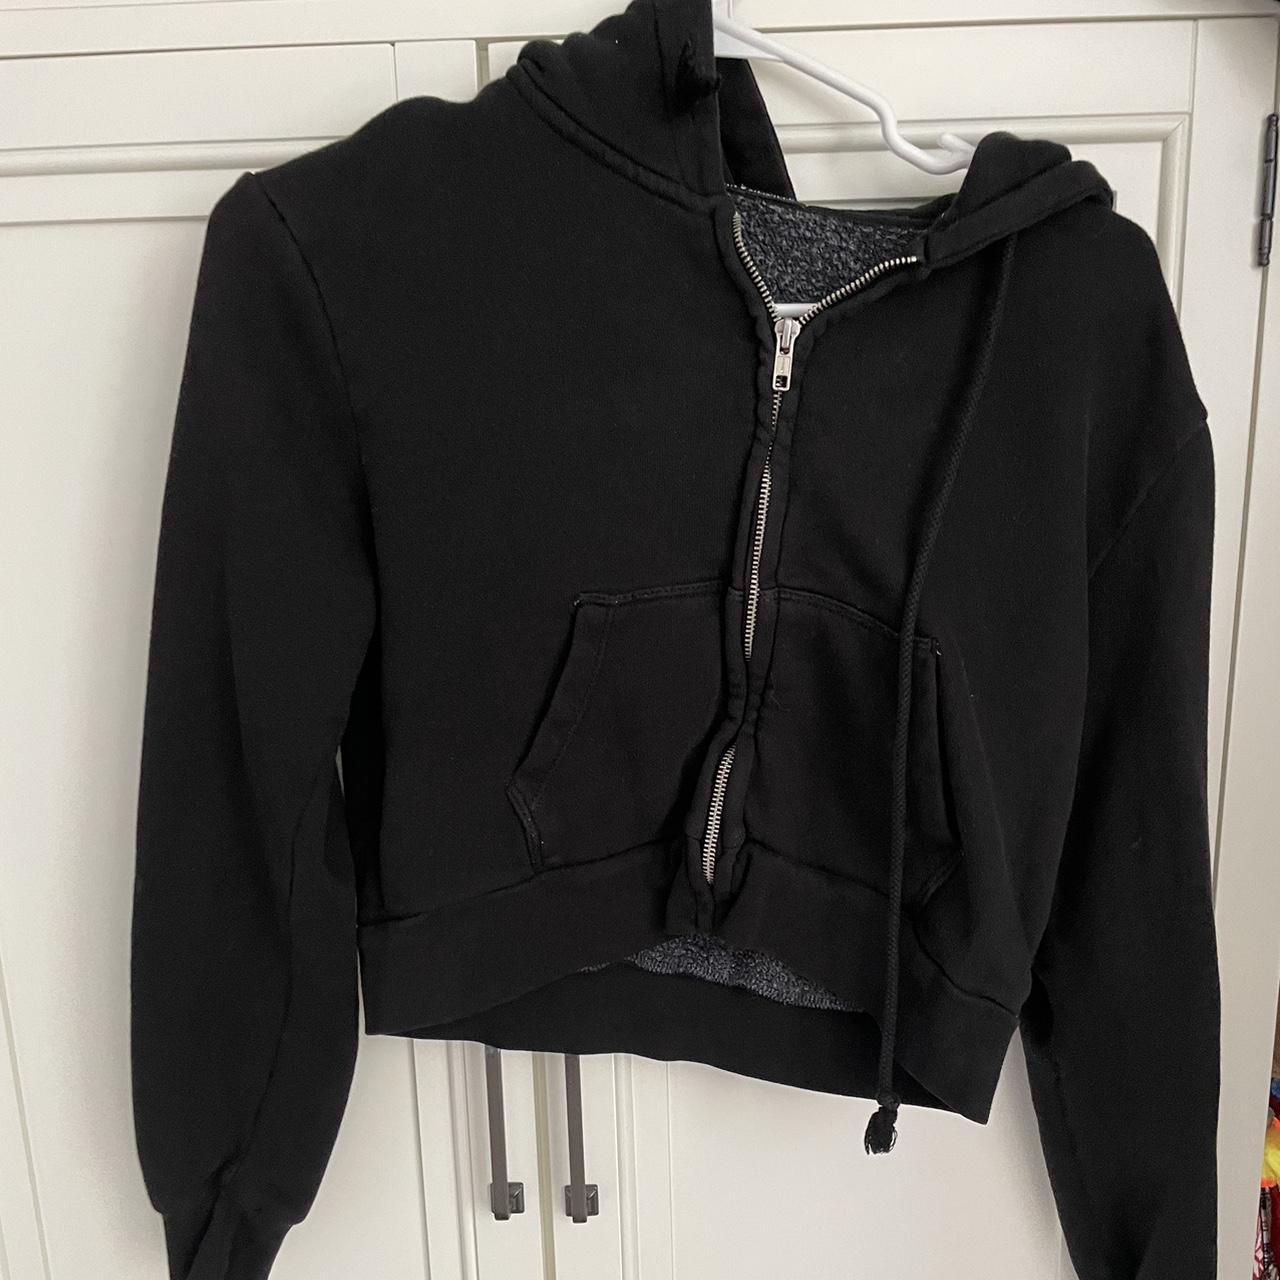 Brandy Melville black cropped zip up hoodie - Depop